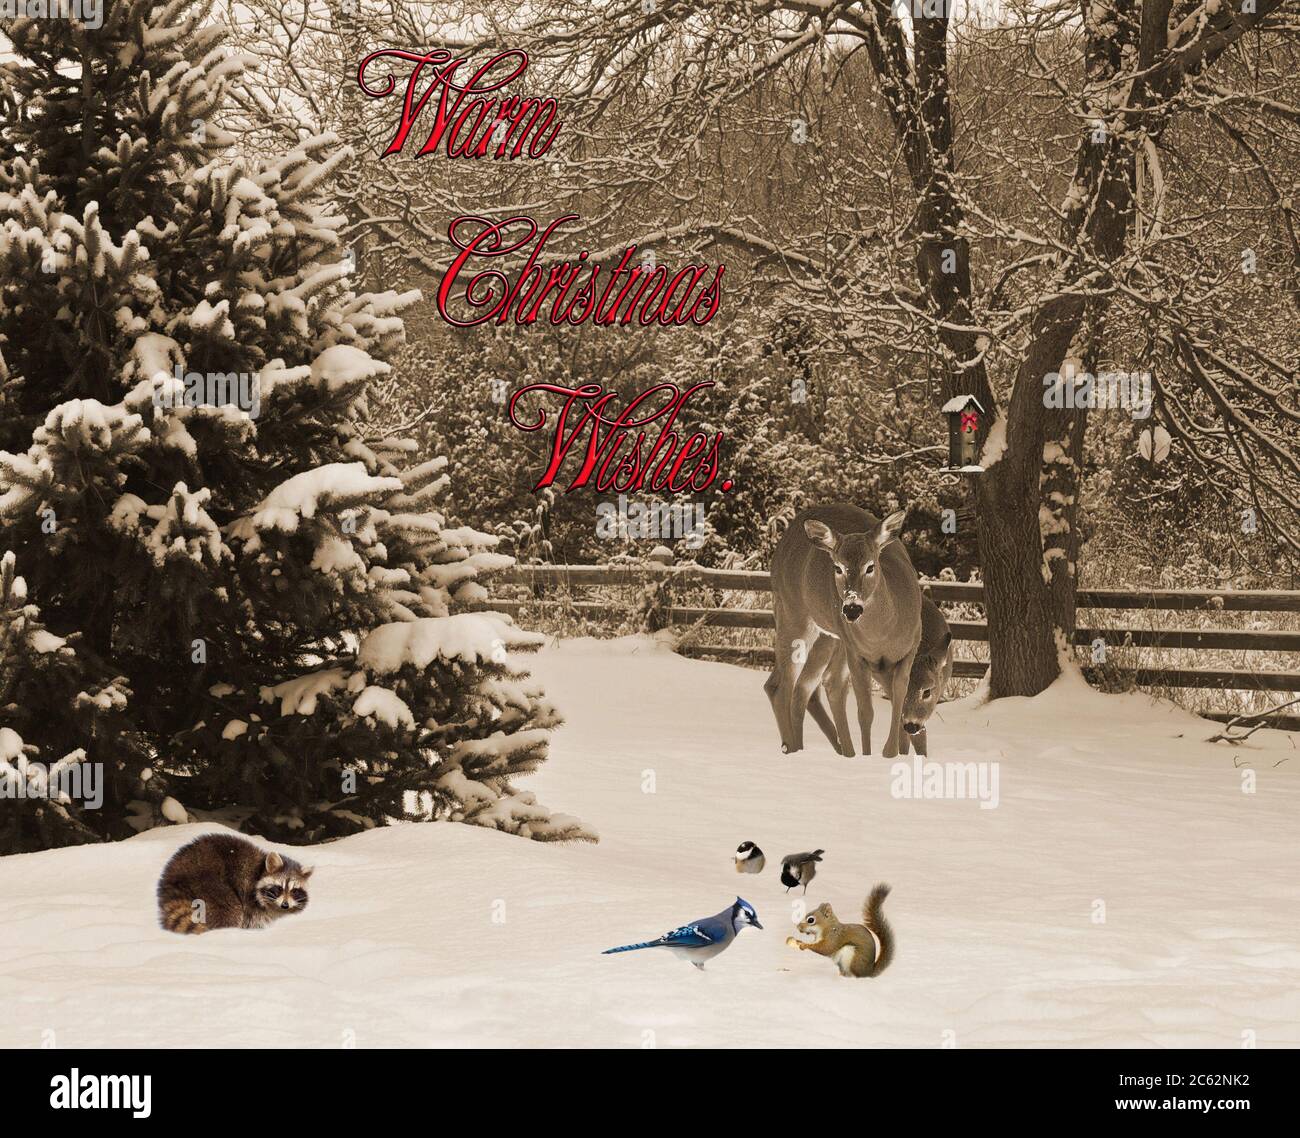 Carte De Noel Avec Animaux Se Rassemblant Dans La Neige Avec Texte De Voeux Chaleureux Photo Stock Alamy